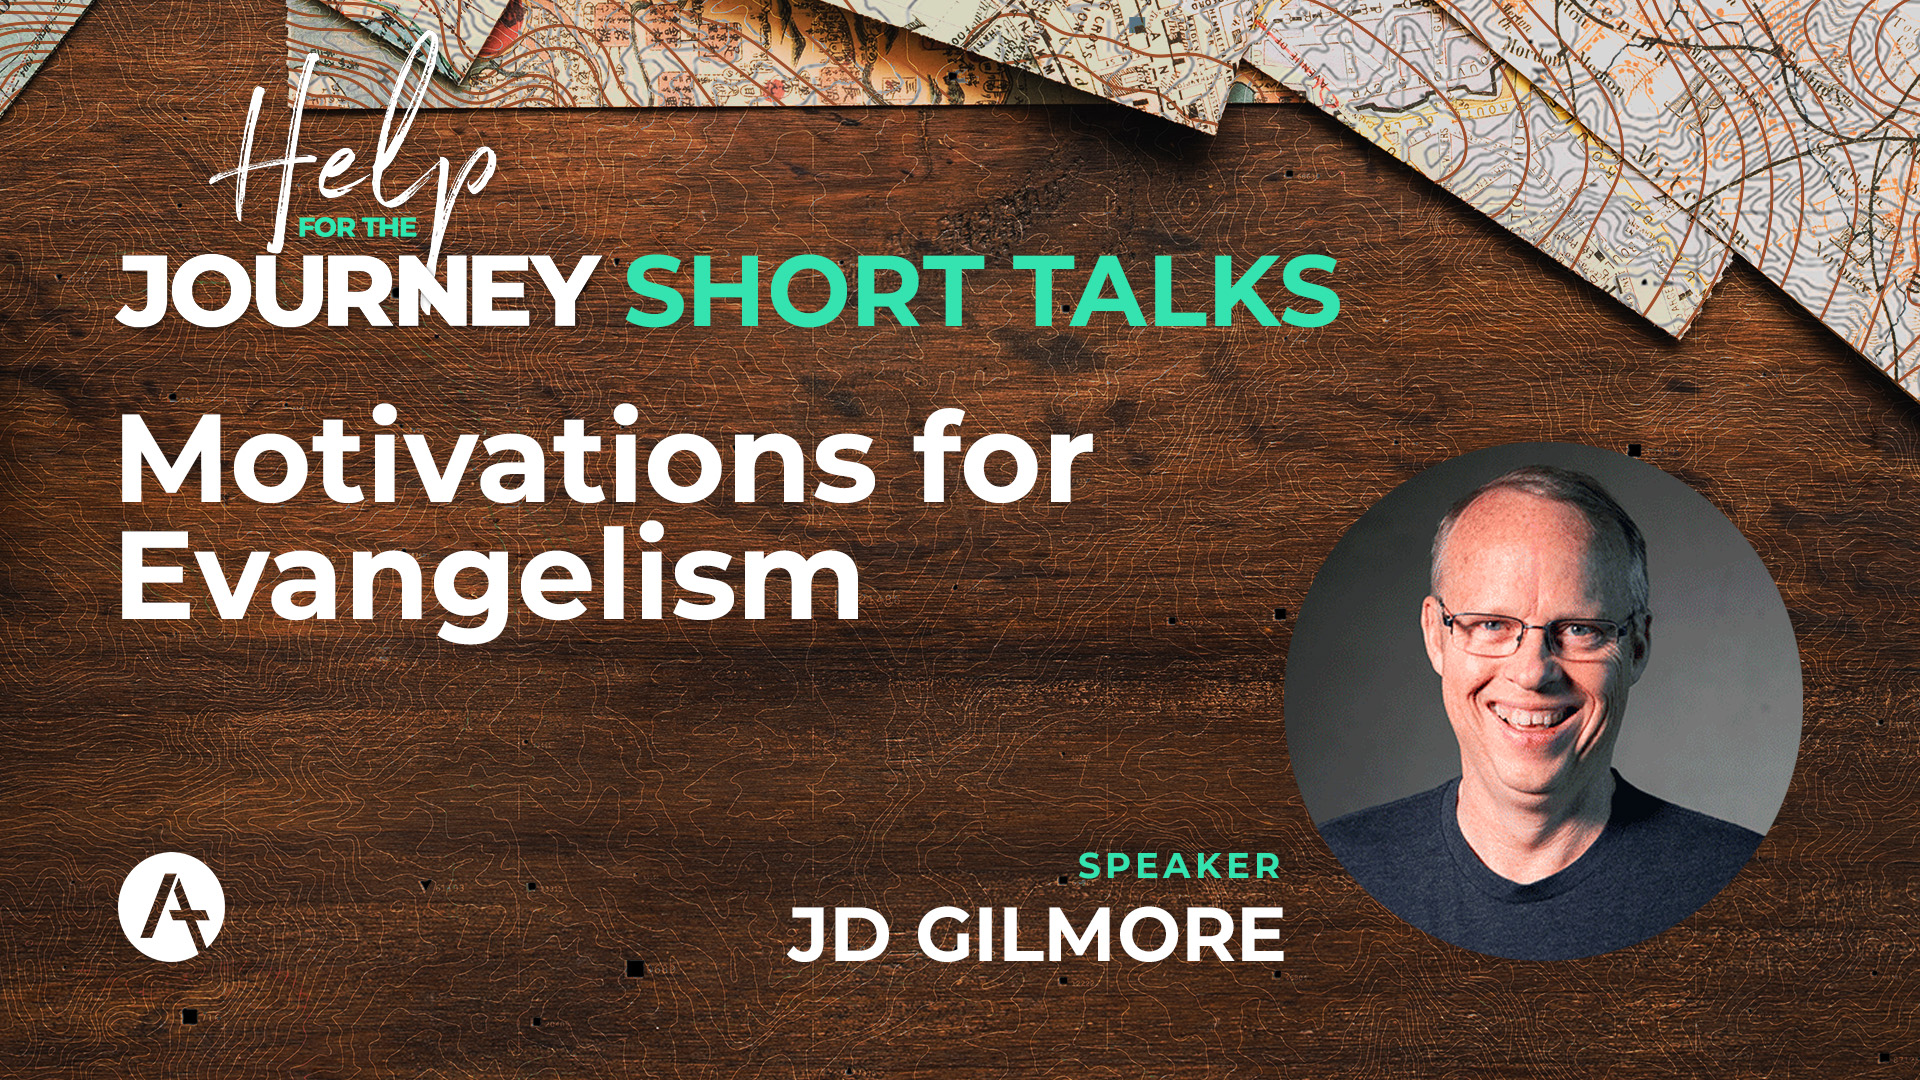 Short talks – JD Gilmore: Motivations for Evangelism